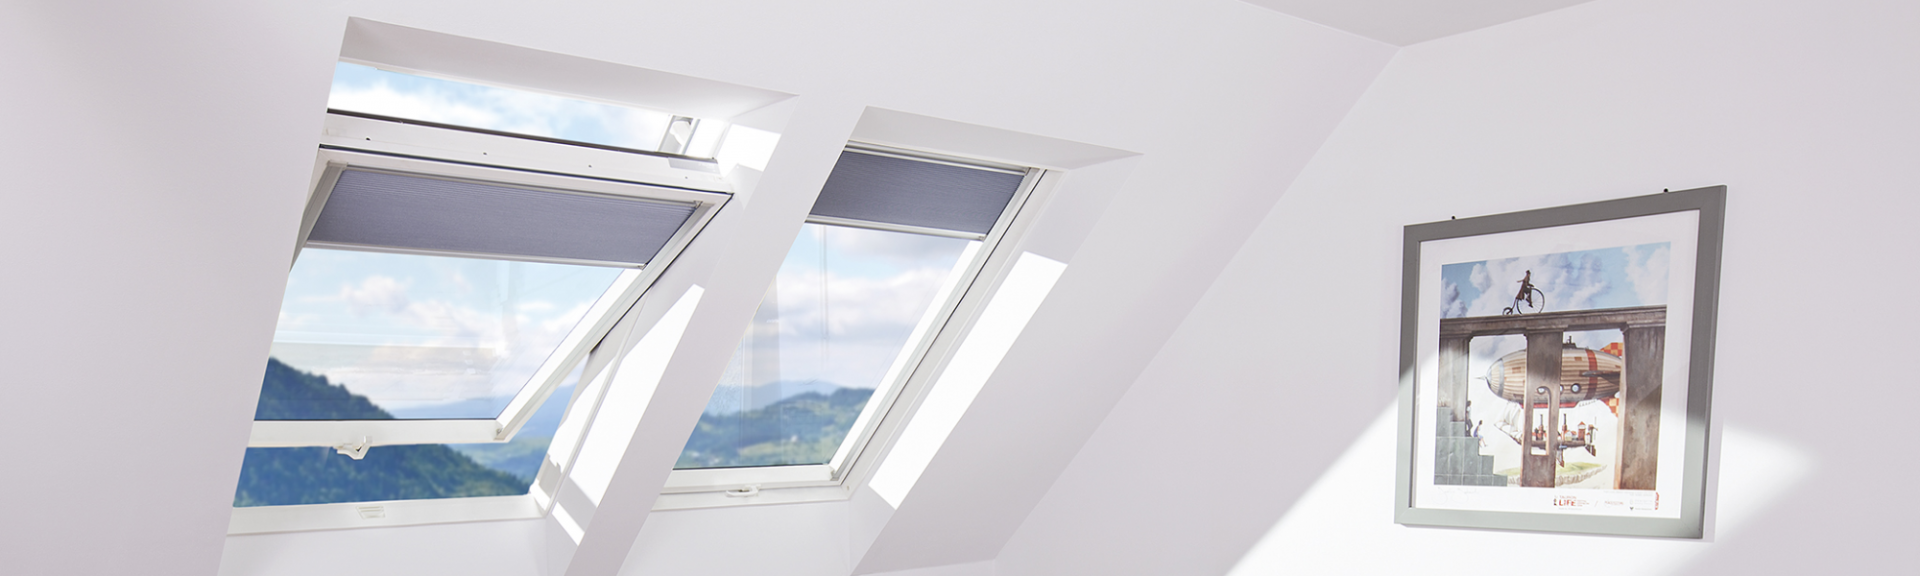 PVC pivot roof windows - FAKRO